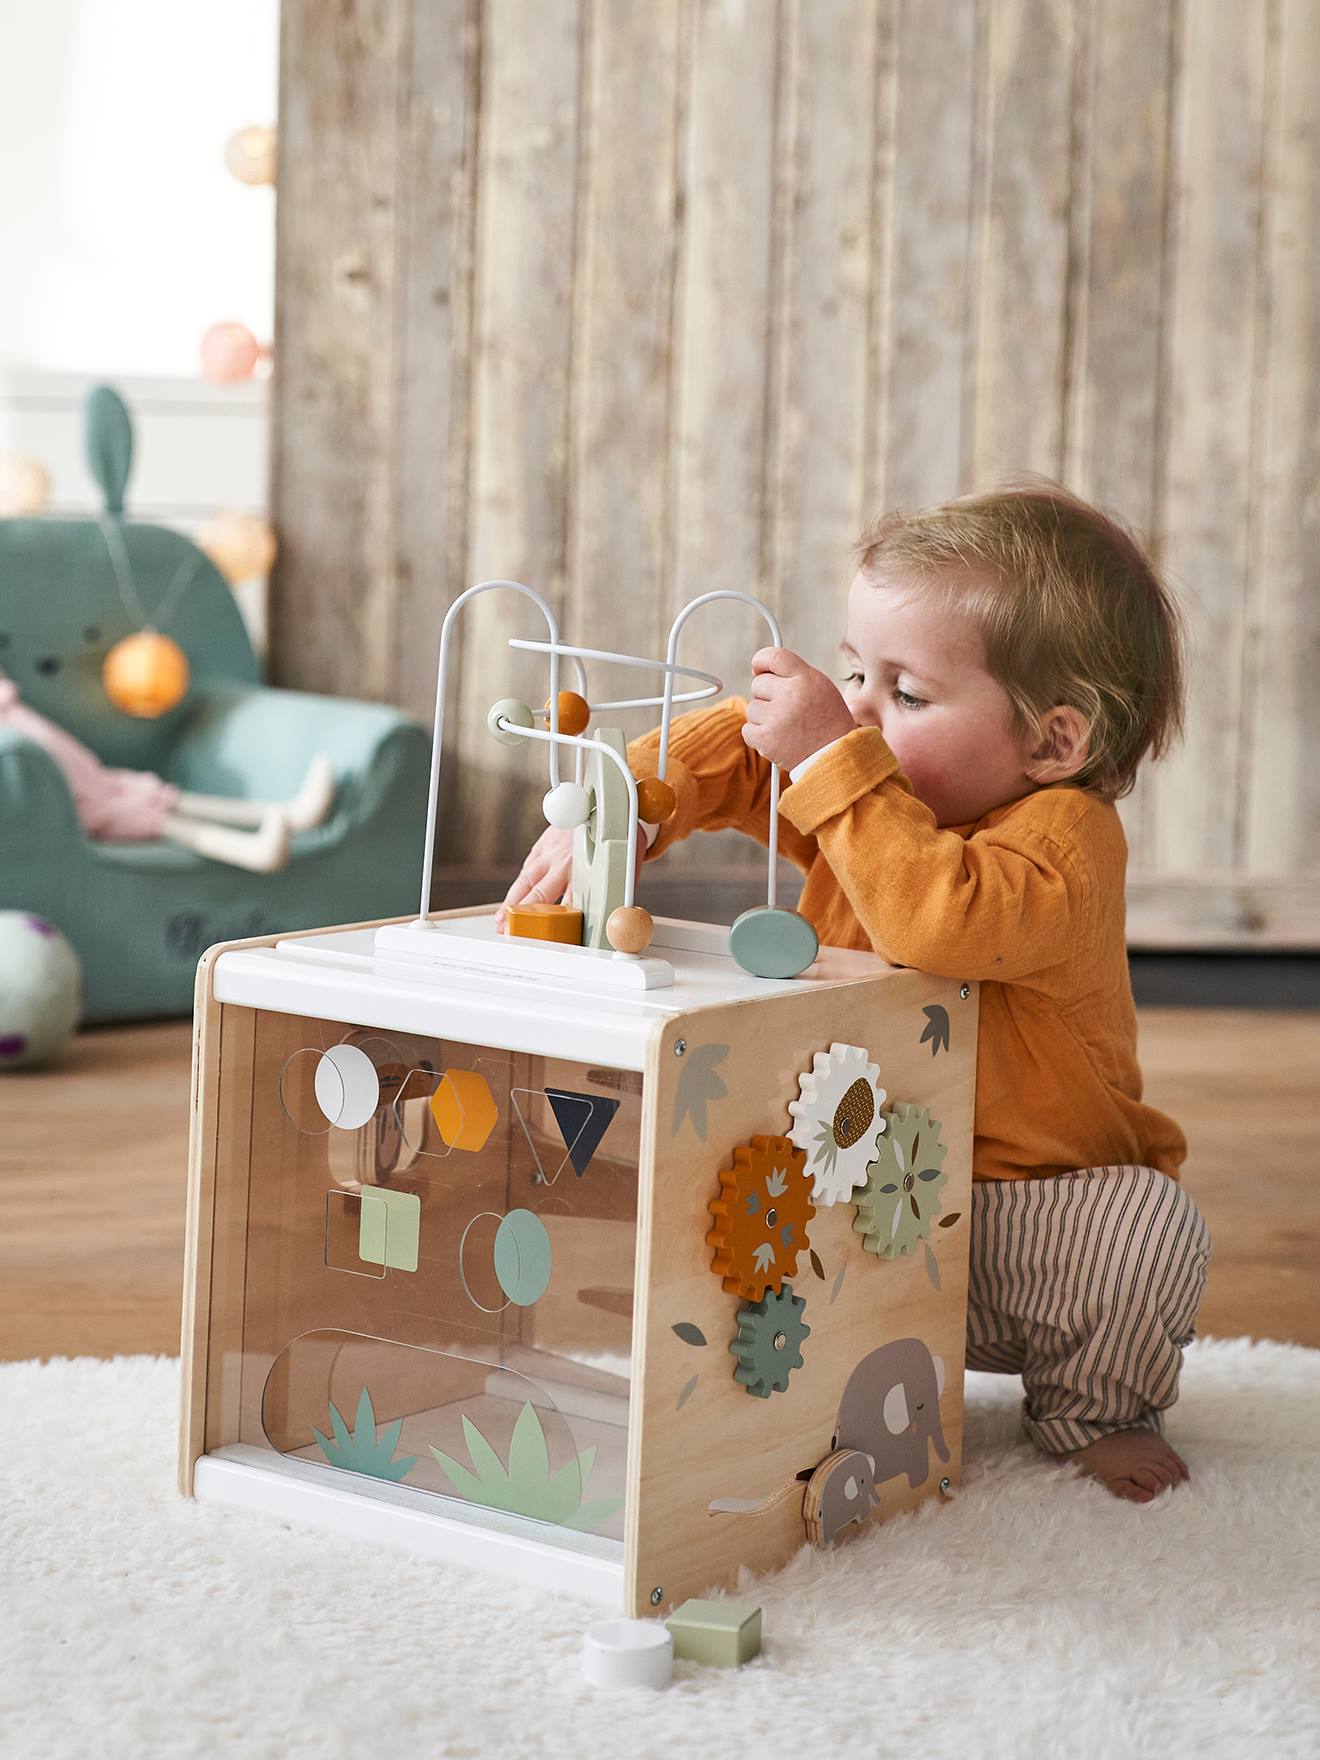 Un coffret cadeau génial pour bébé avec ces jeux d'éveil Montessori